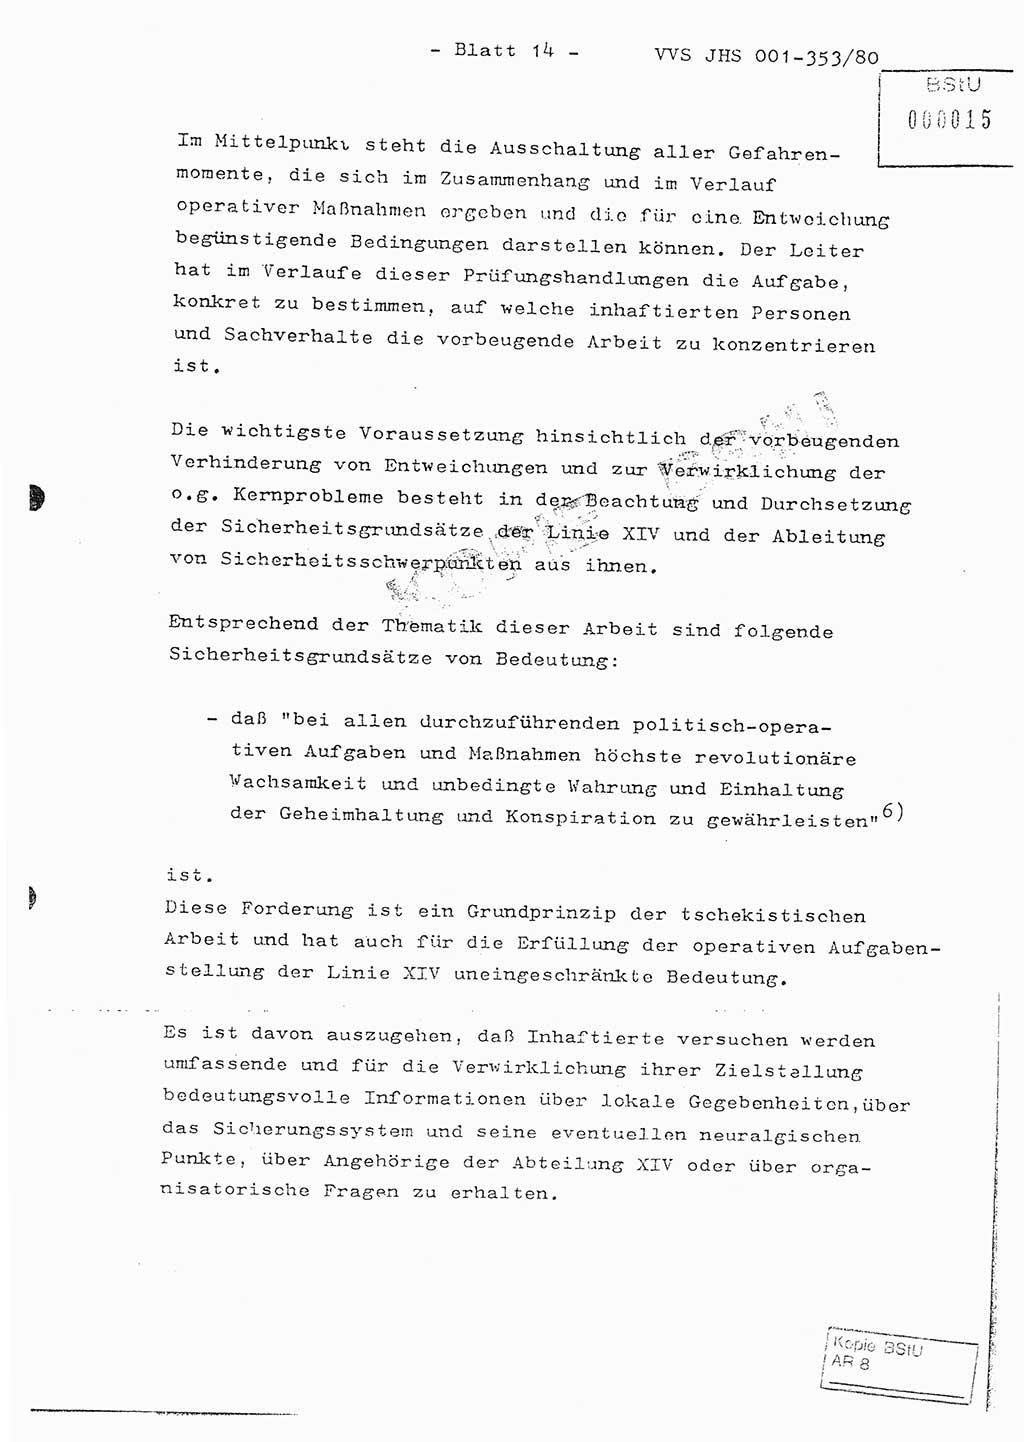 Diplomarbeit Hauptmann Joachim Klaumünzner (Abt. ⅩⅣ), Ministerium für Staatssicherheit (MfS) [Deutsche Demokratische Republik (DDR)], Juristische Hochschule (JHS), Vertrauliche Verschlußsache (VVS) o001-353/80, Potsdam 1980, Blatt 14 (Dipl.-Arb. MfS DDR JHS VVS o001-353/80 1980, Bl. 14)